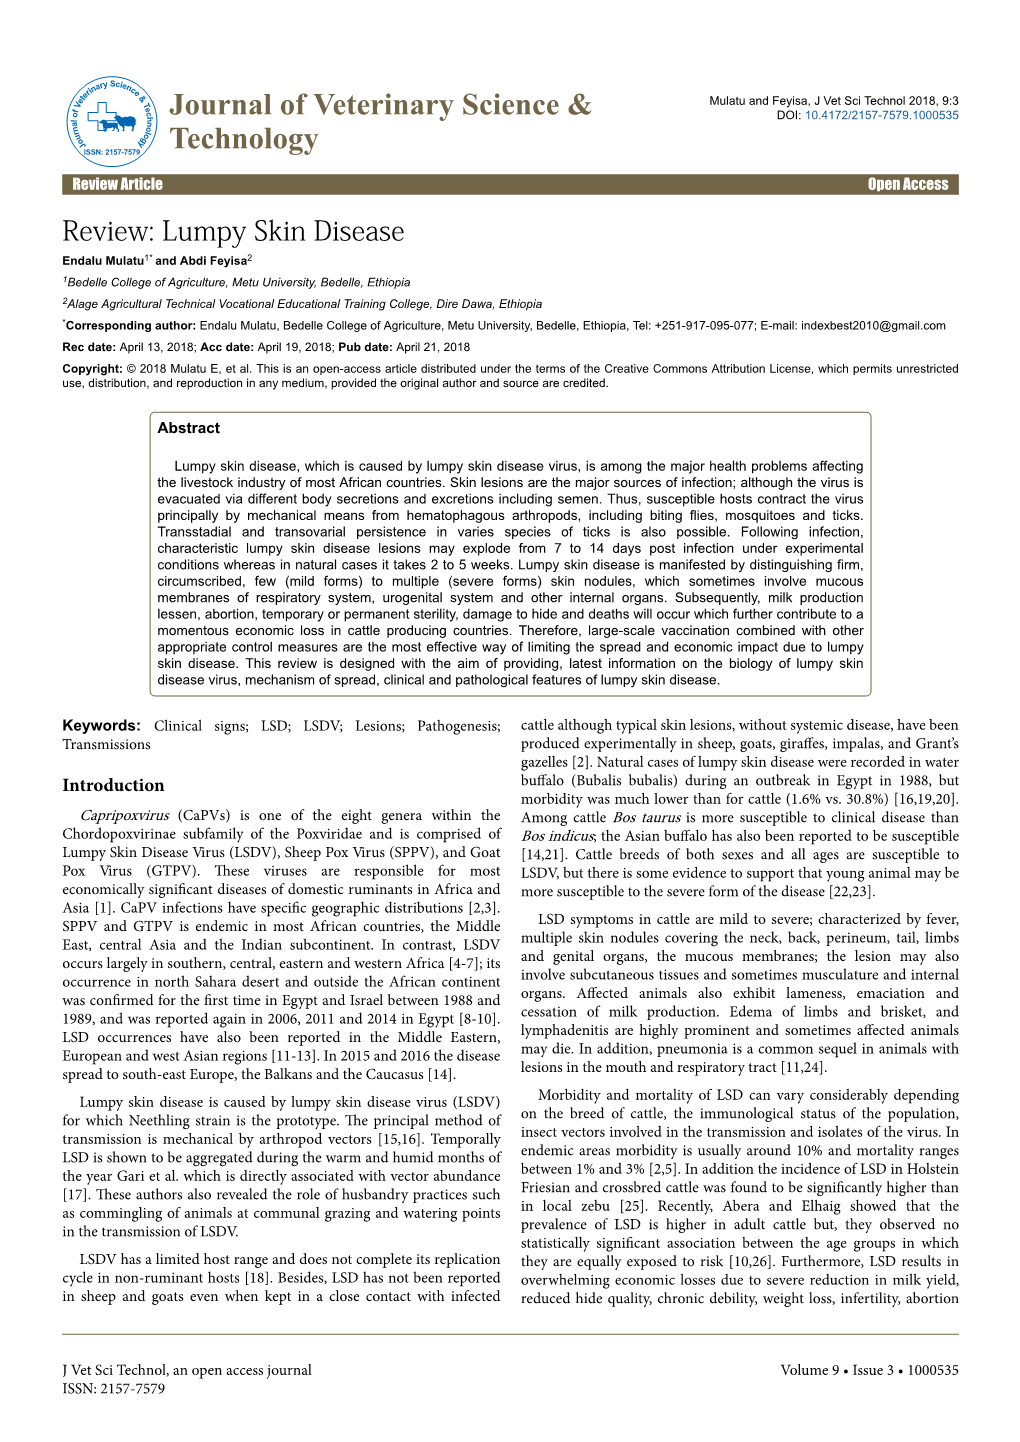 Review: Lumpy Skin Disease